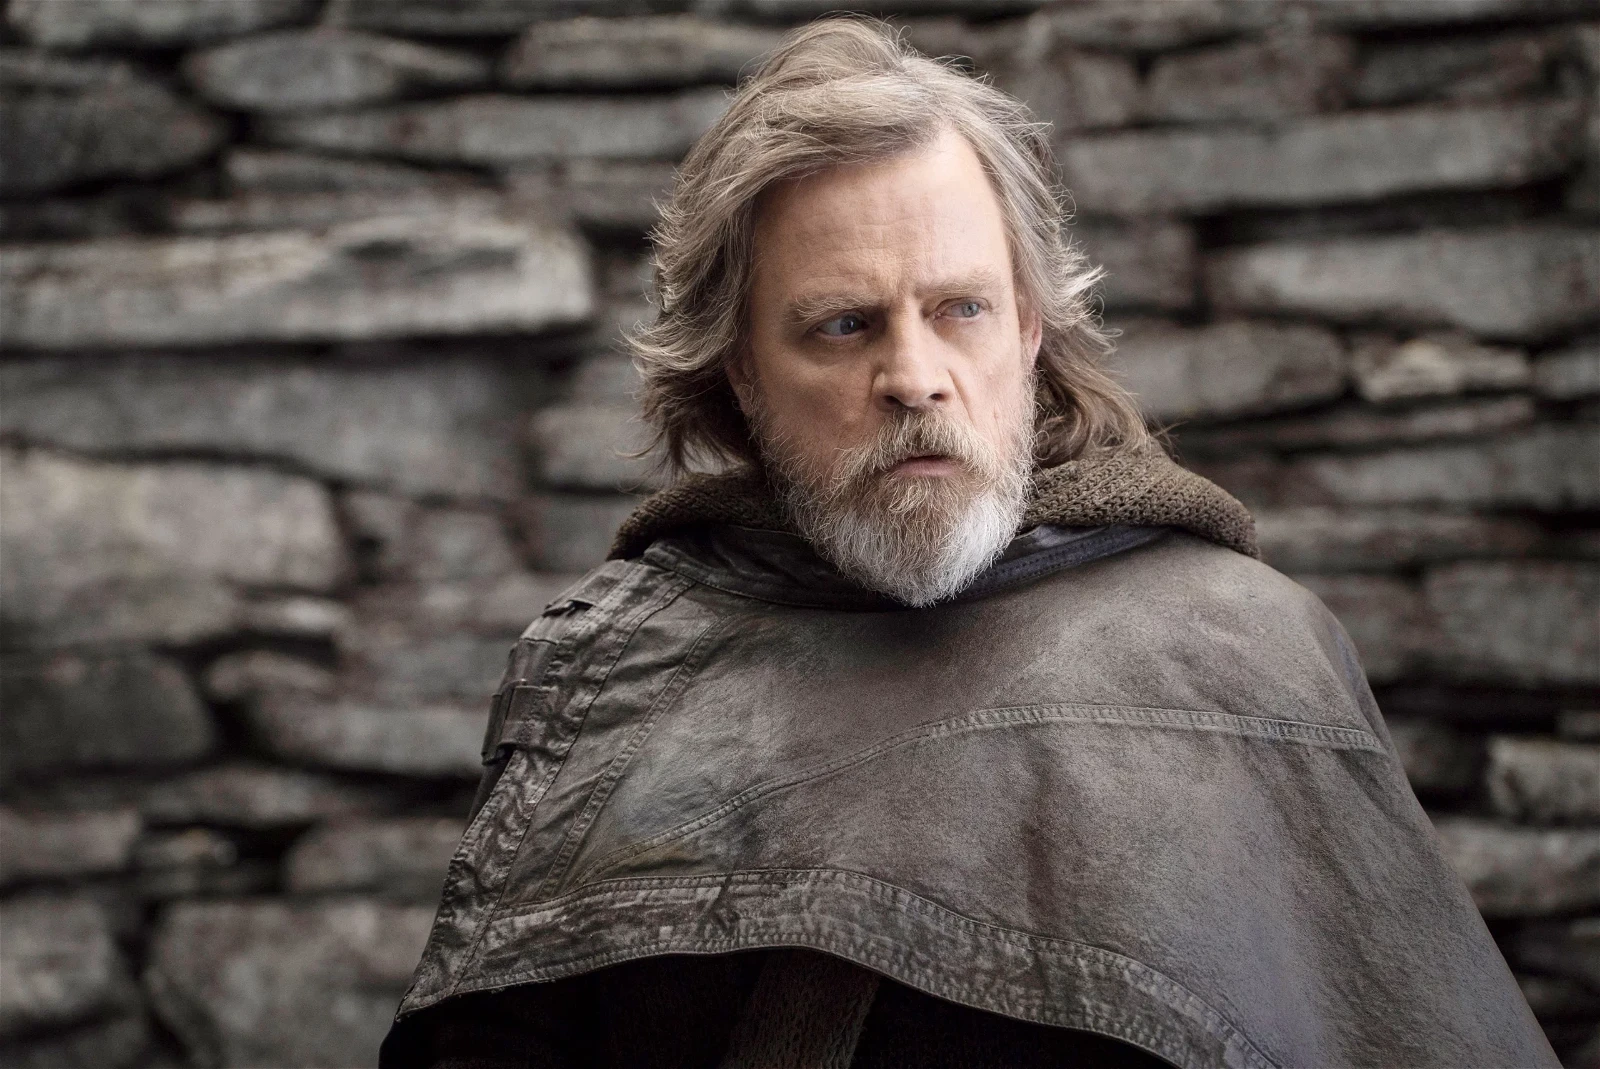 Mark Hamill as Luke Skywalker in Star Wars sequel trilogy